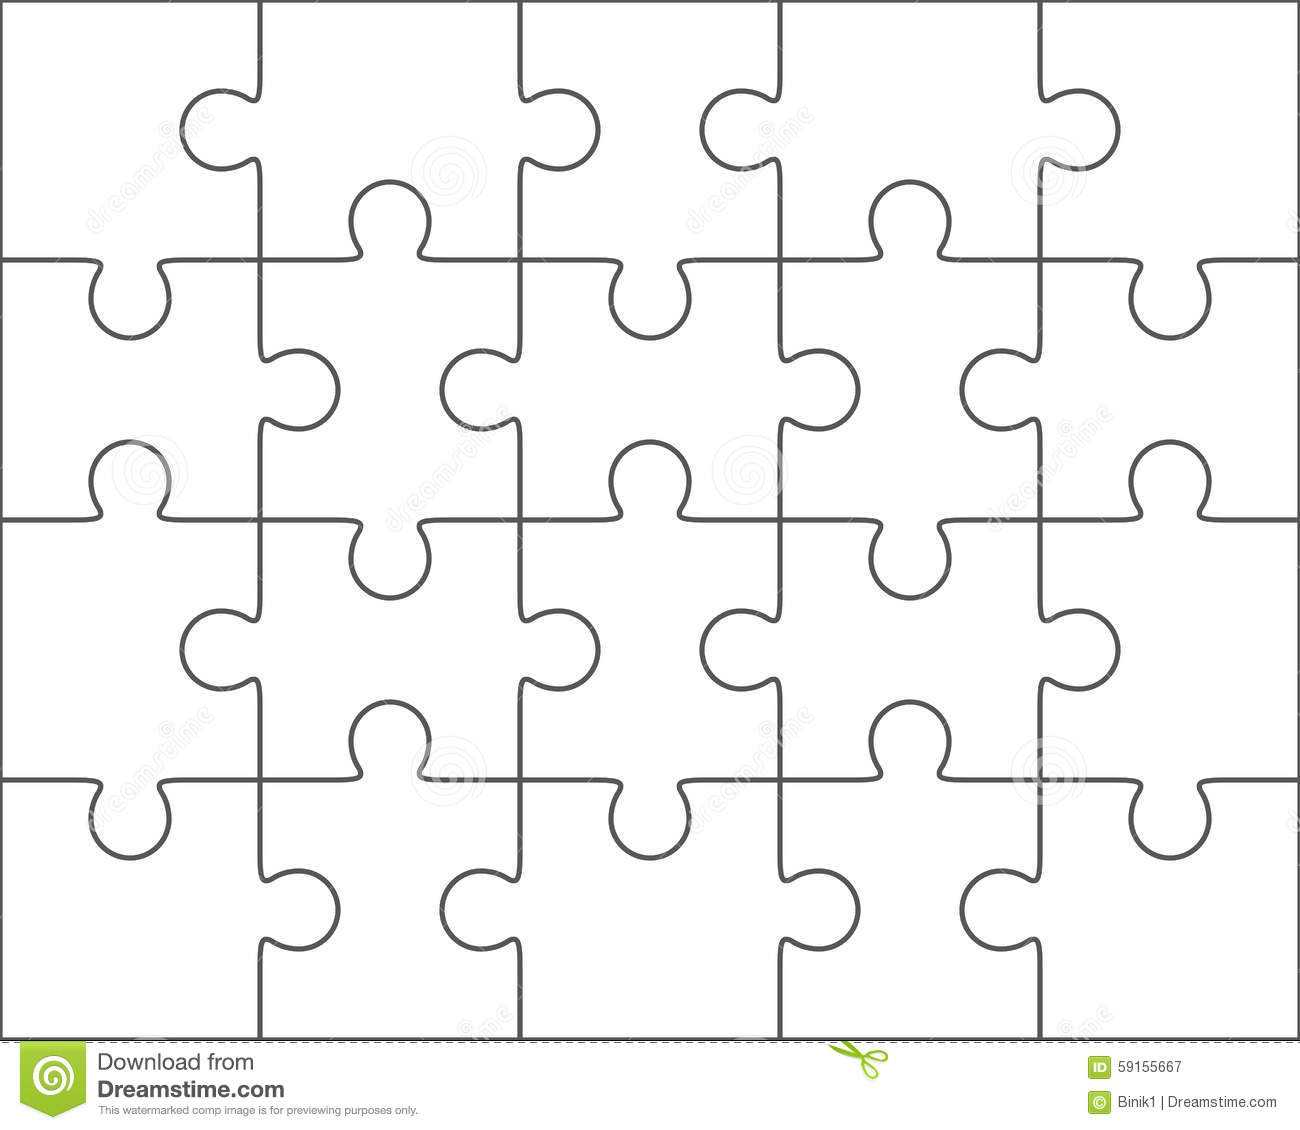 Jigsaw Puzzle Blank Template 4X5, Twenty Pieces Stock With Blank Jigsaw Piece Template